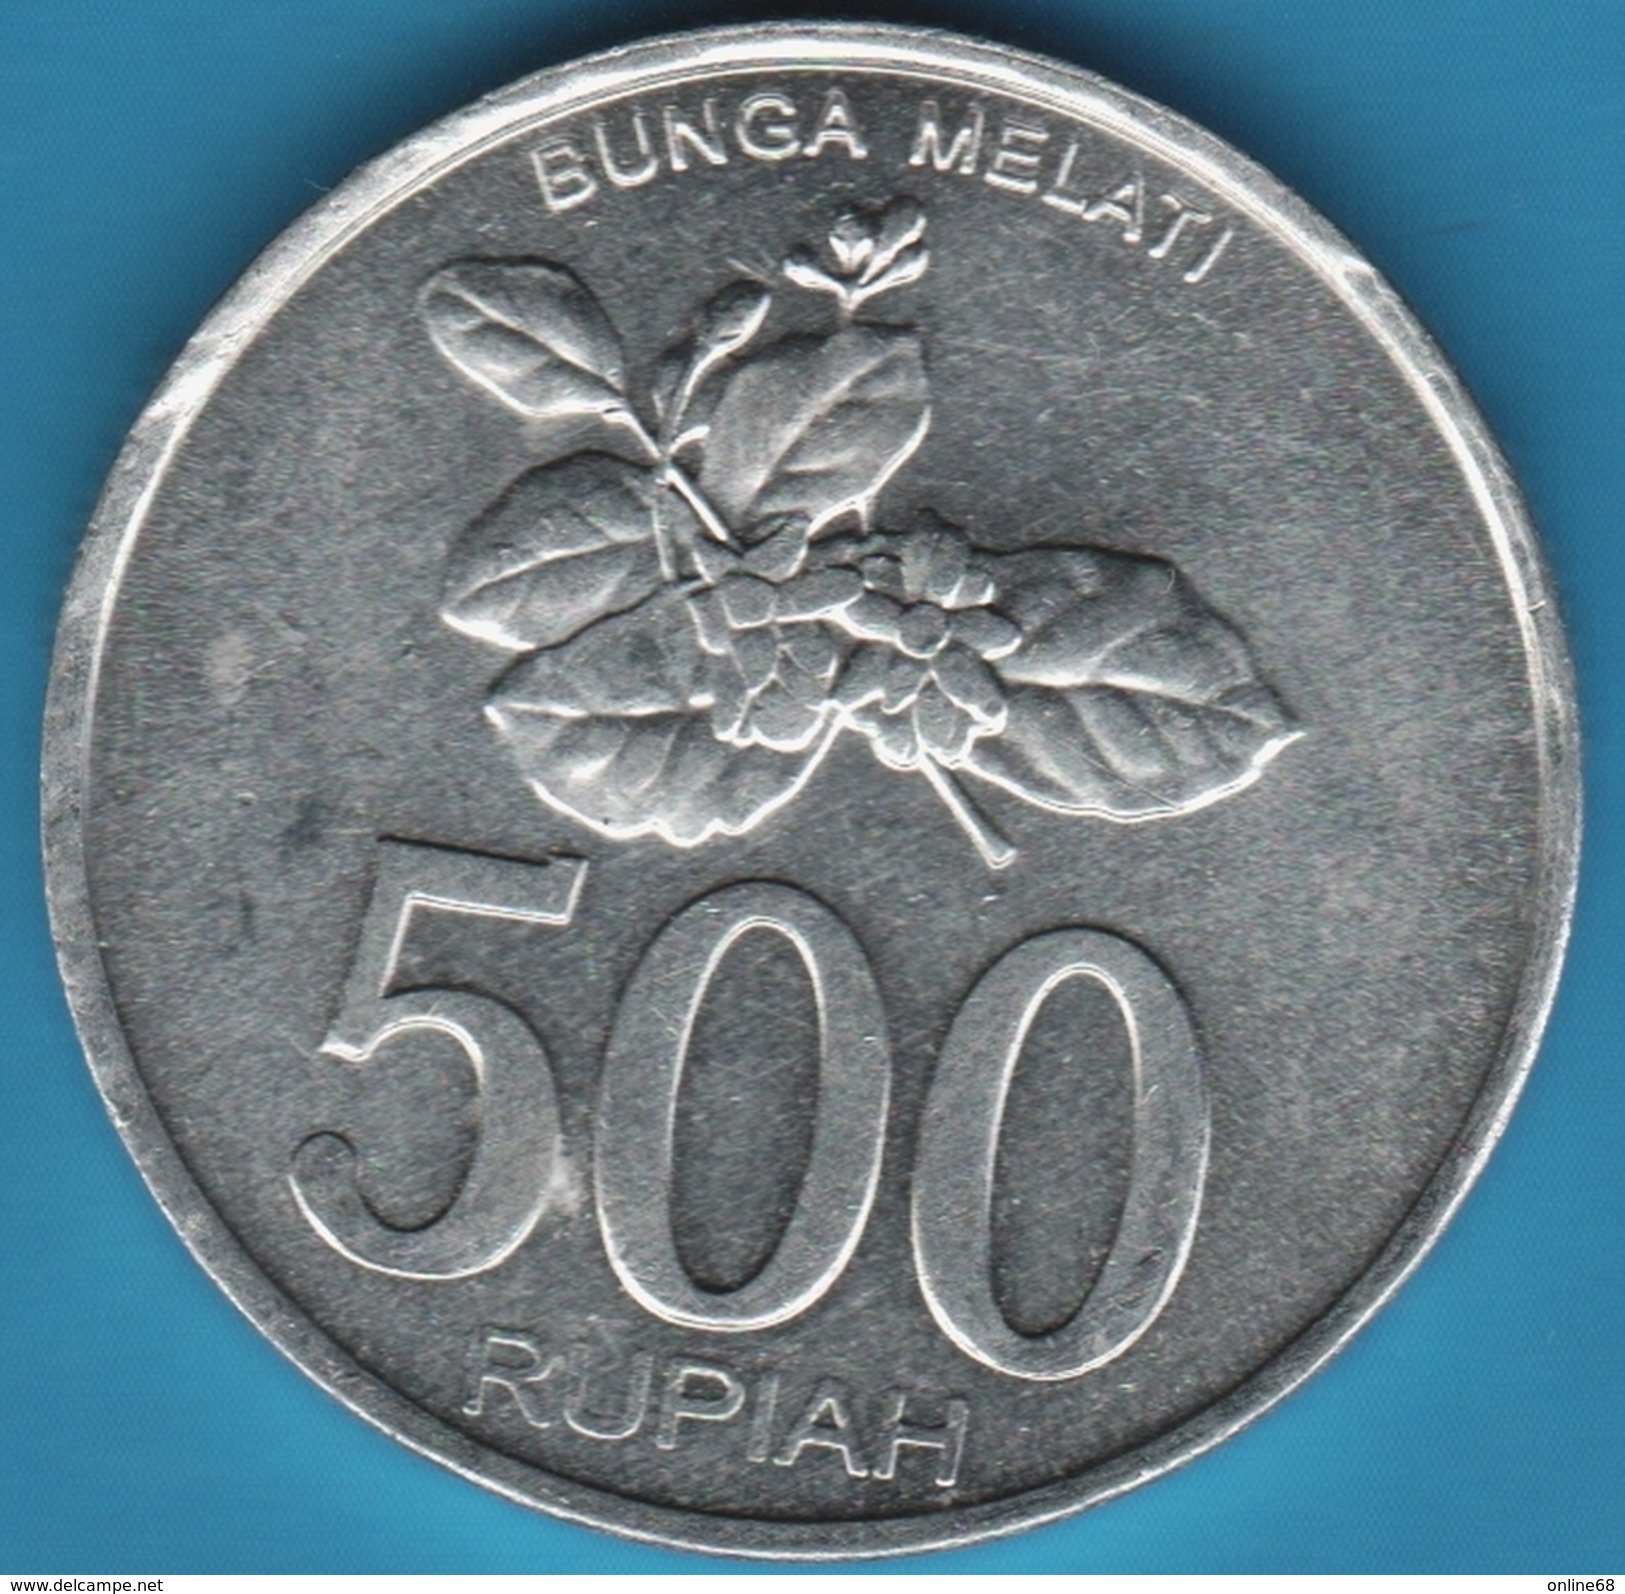 INDONESIA 500 RUPIAH 2003 BUNGA MELATI KM# 67 - Indonesien